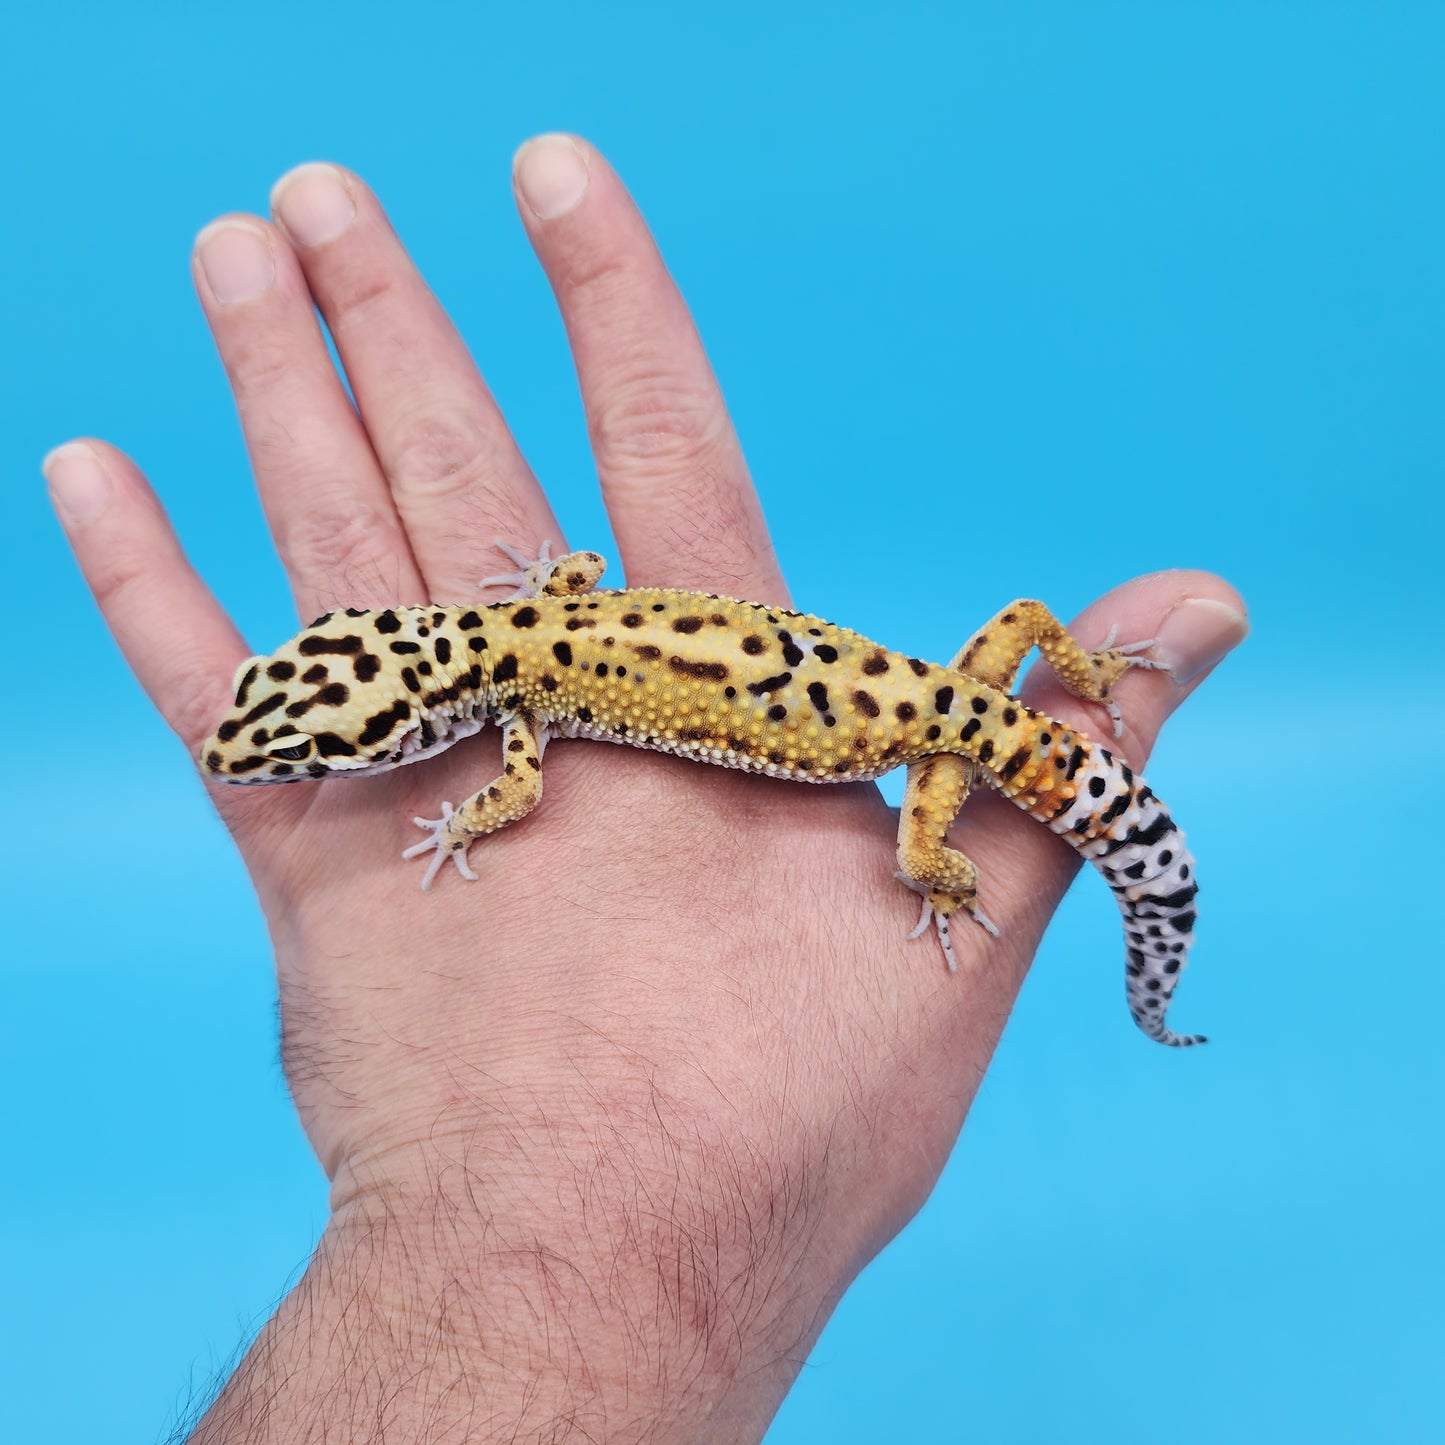 Male Inferno Tangerine Bold Cross Emerine Leopard Gecko